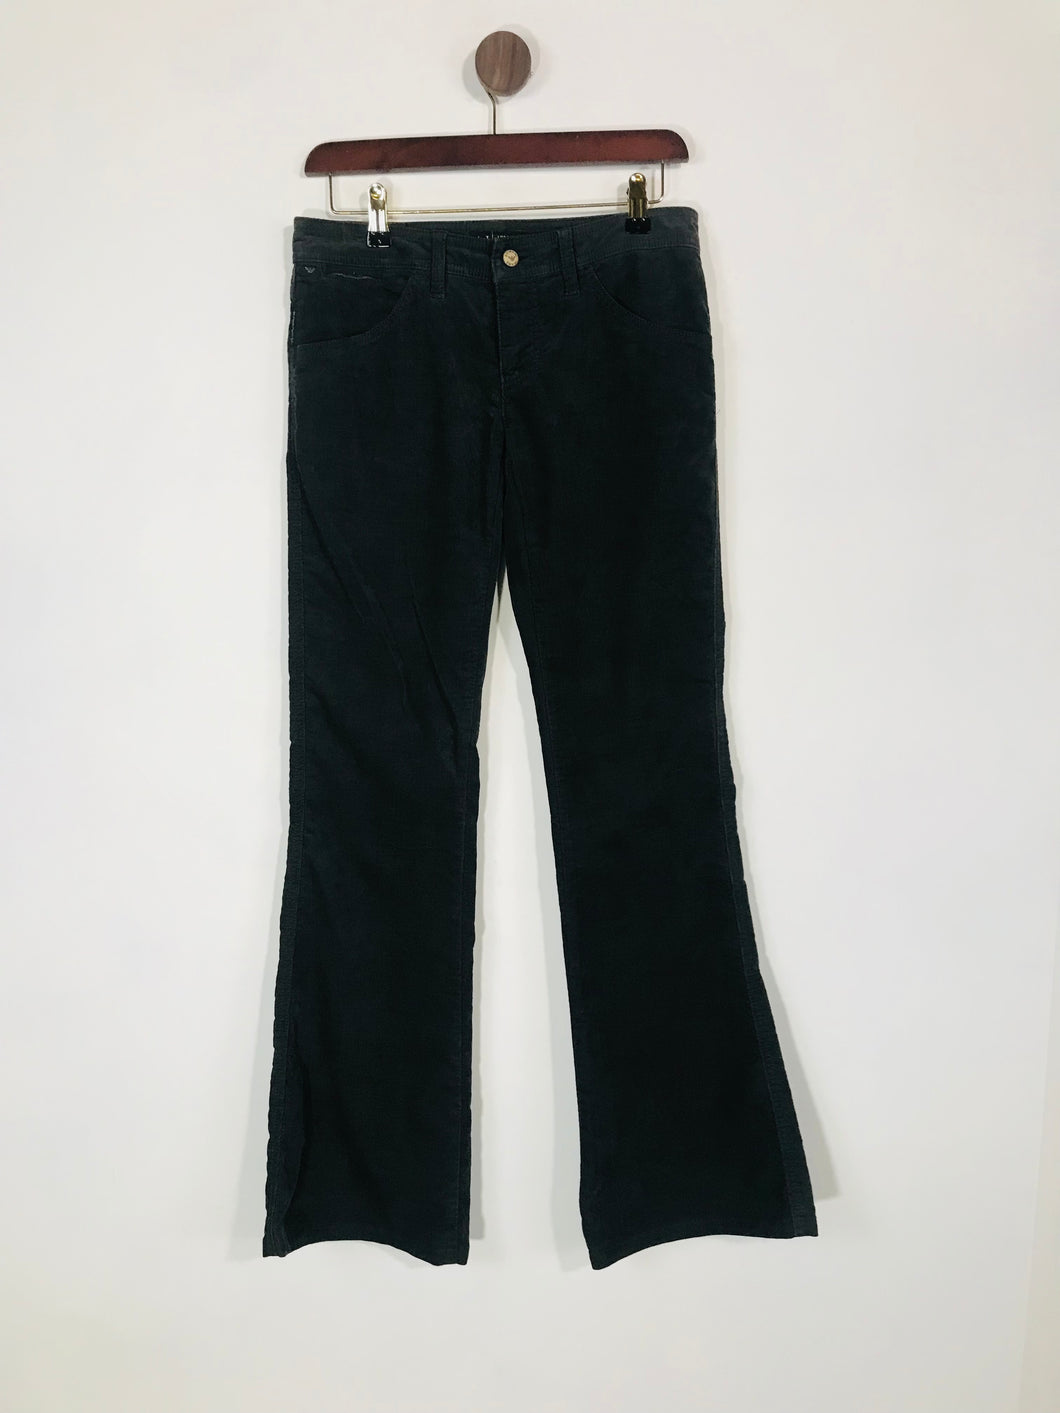 Armani Jeans Women's Cotton Vintage Corduroy Trousers | W26 UK8 | Grey